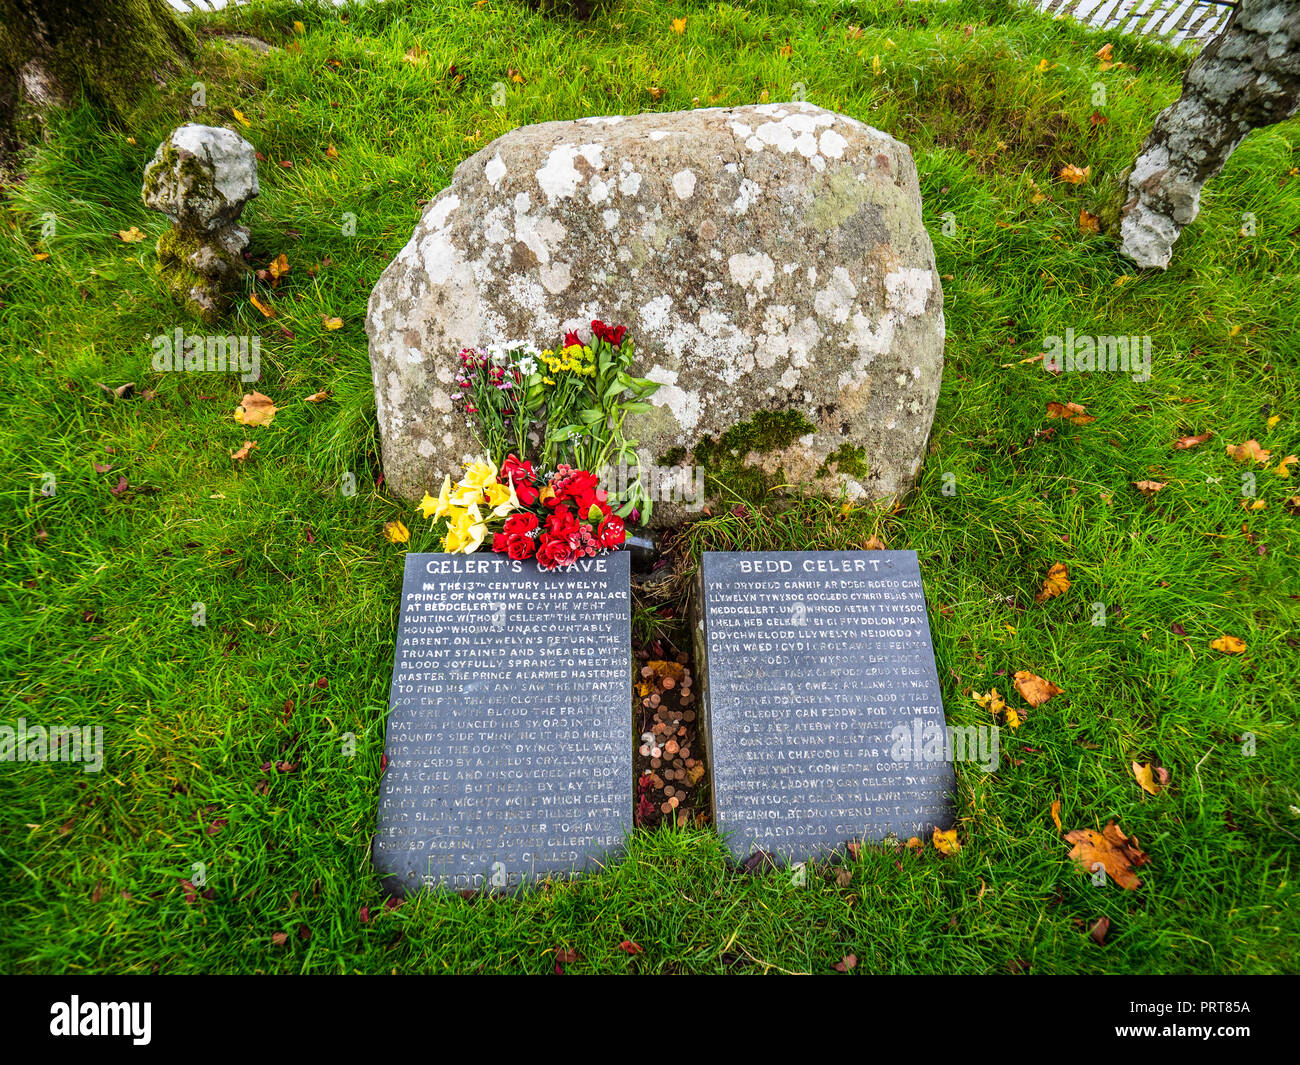 Beddgelert Gelerts Grab - Grab von Gelert der Hund in der Walisischen Legende über einen Hund versehentlich von seinem Meister Llywelyn die Große getötet Stockfoto